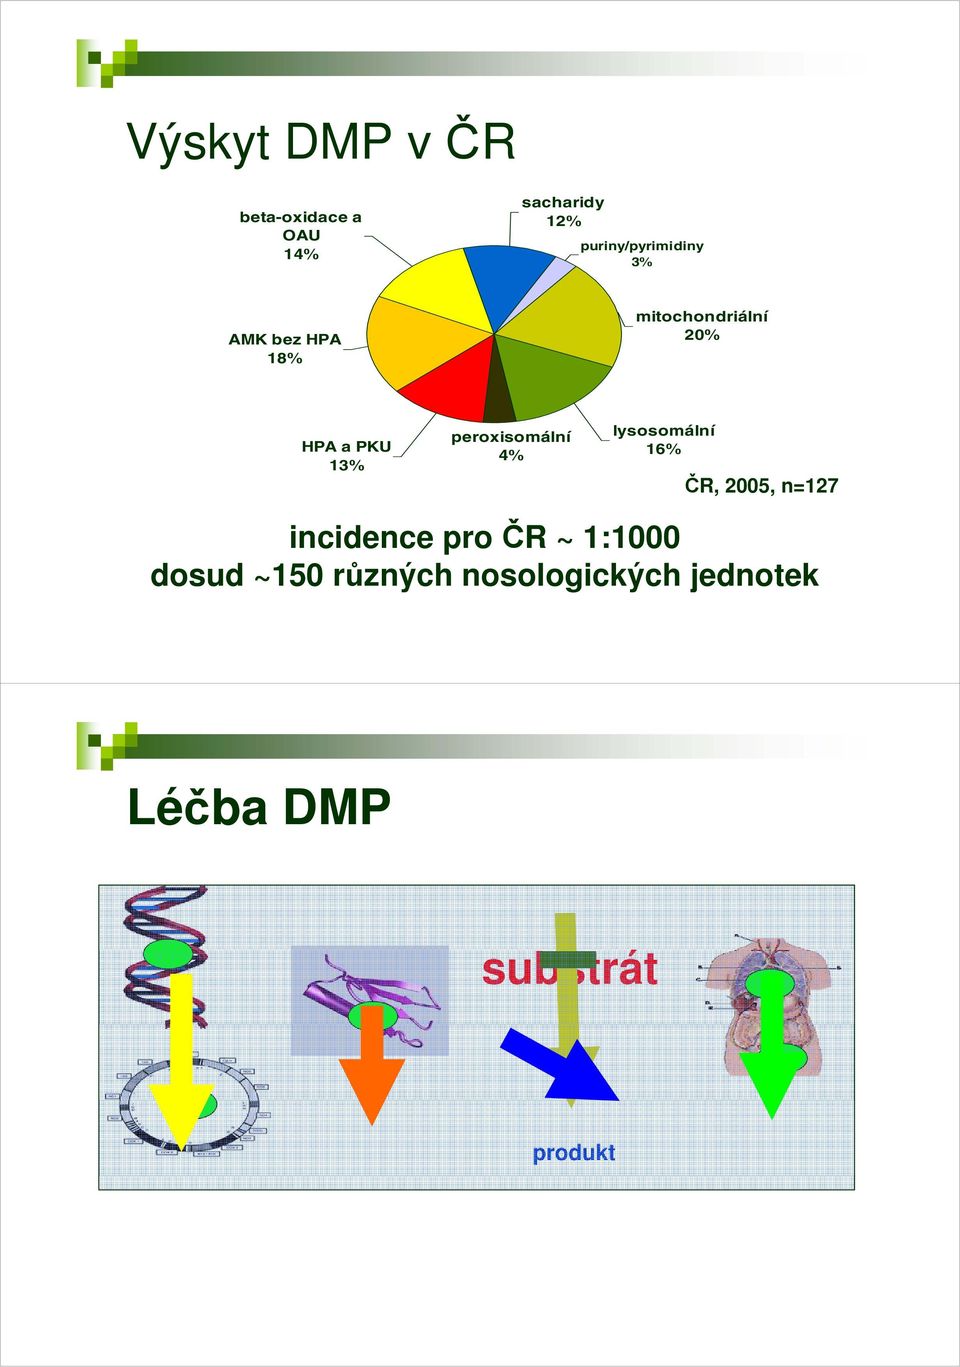 13% peroxisomální 4% lysosomální 16% ČR,, 2005, n=127 incidence pro